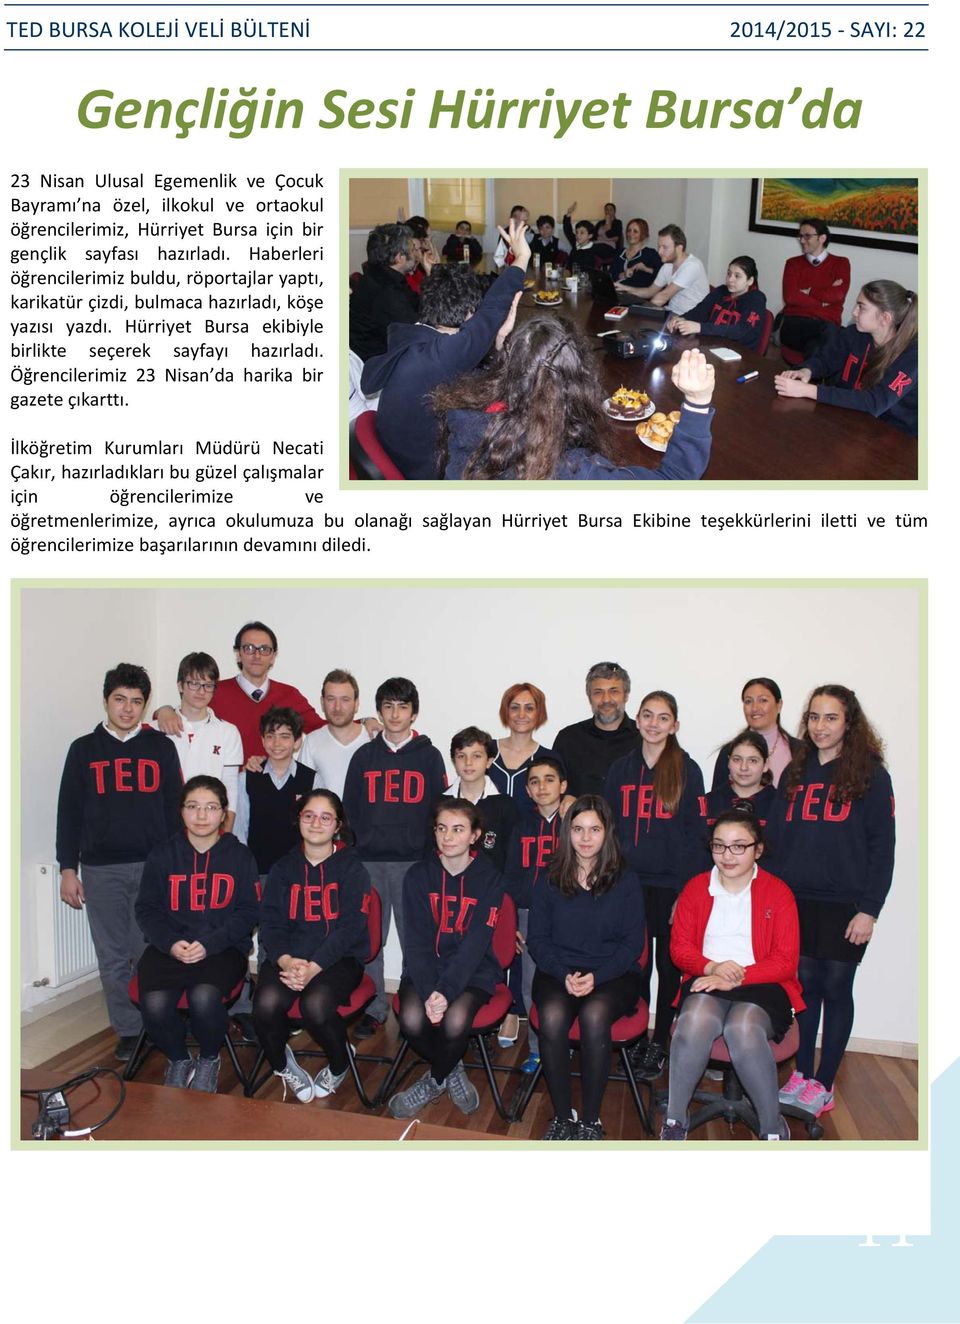 Hürriyet Bursa ekibiyle birlikte seçerek sayfayı hazırladı. Öğrencilerimiz 23 Nisan da harika bir gazete çıkarttı.